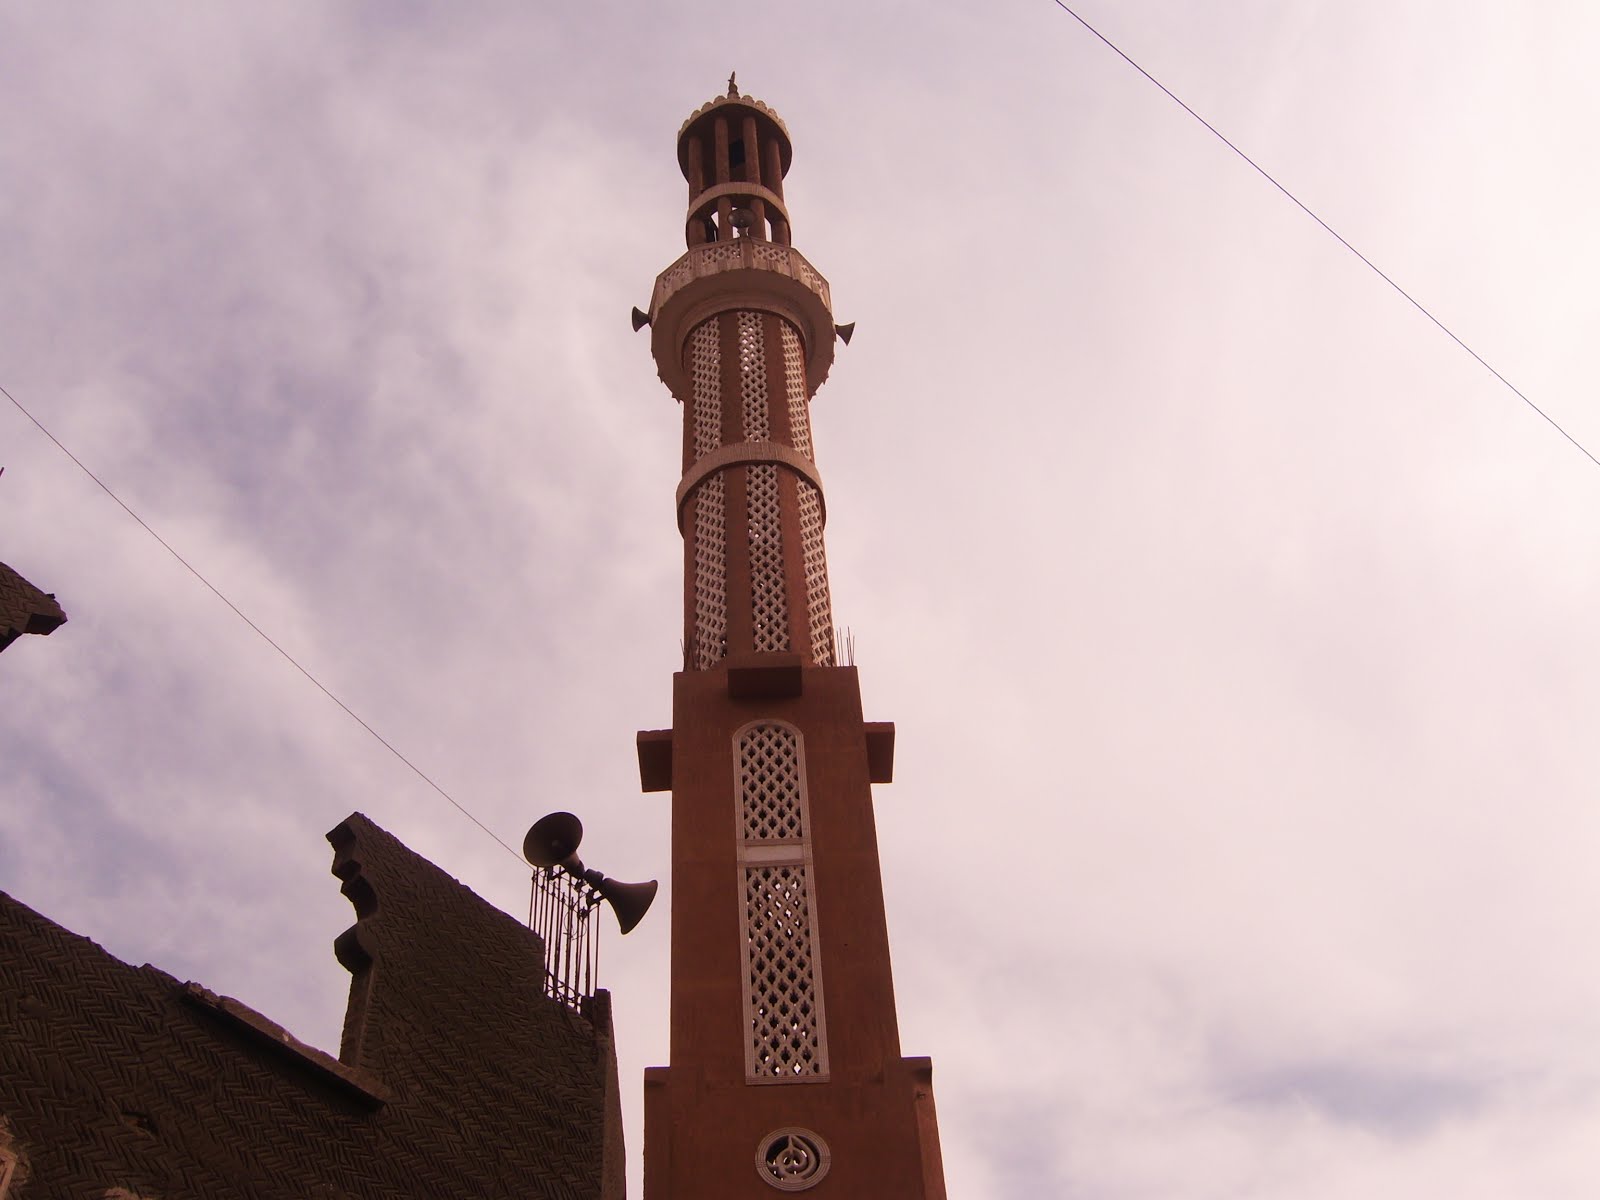 مسجد الشيخ محمد ( النصرة سابقا ) بمدينة ملوى ش امين بك الريدى